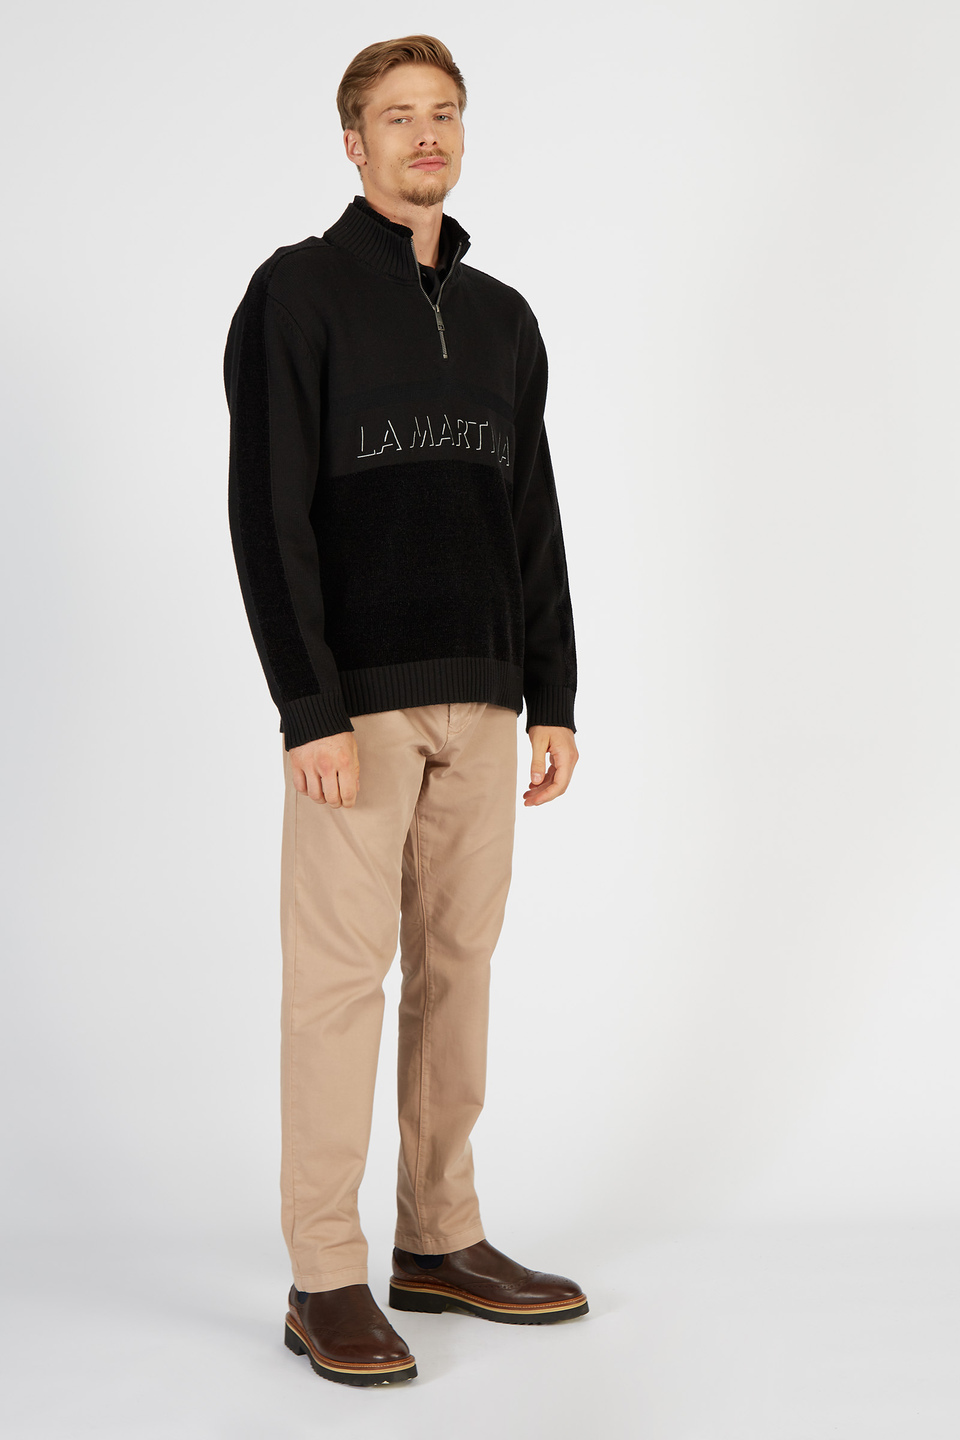 Chandail en tricot pour hommes avec manches longues en coton et laine | La Martina - Official Online Shop